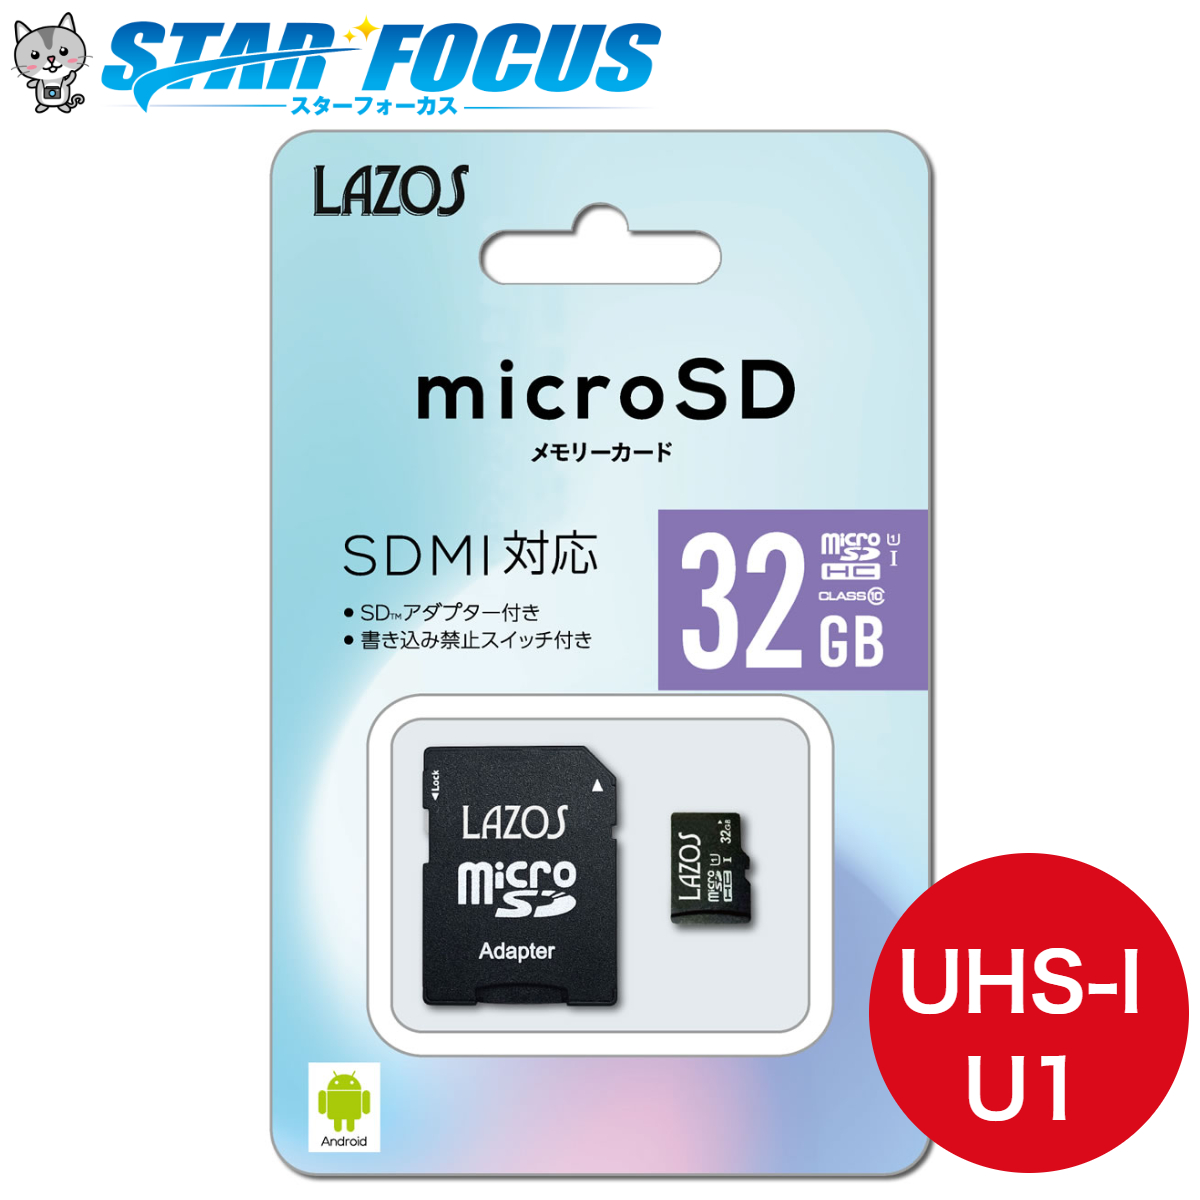 100%品質保証! P マイクロSDカード 64GB 2枚セット MicroSDカード fawe.org